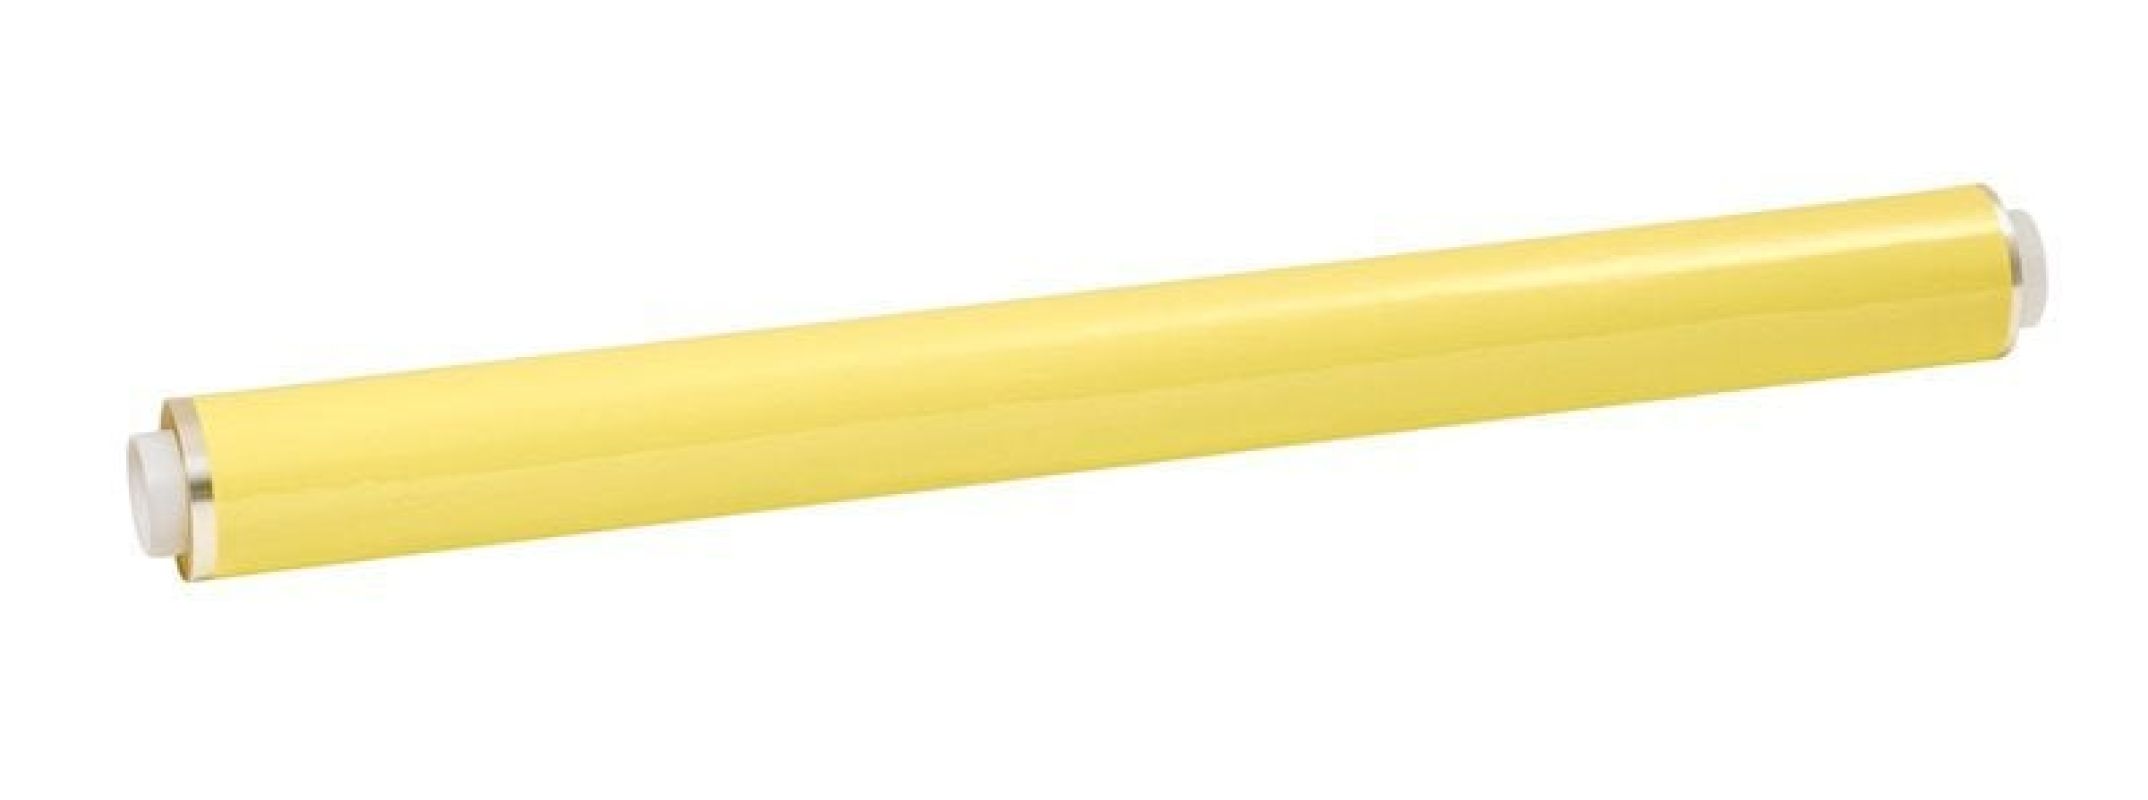 3M™ 1350F-1 PE 1219 mm x 66 m szalag  Lo1, sárga